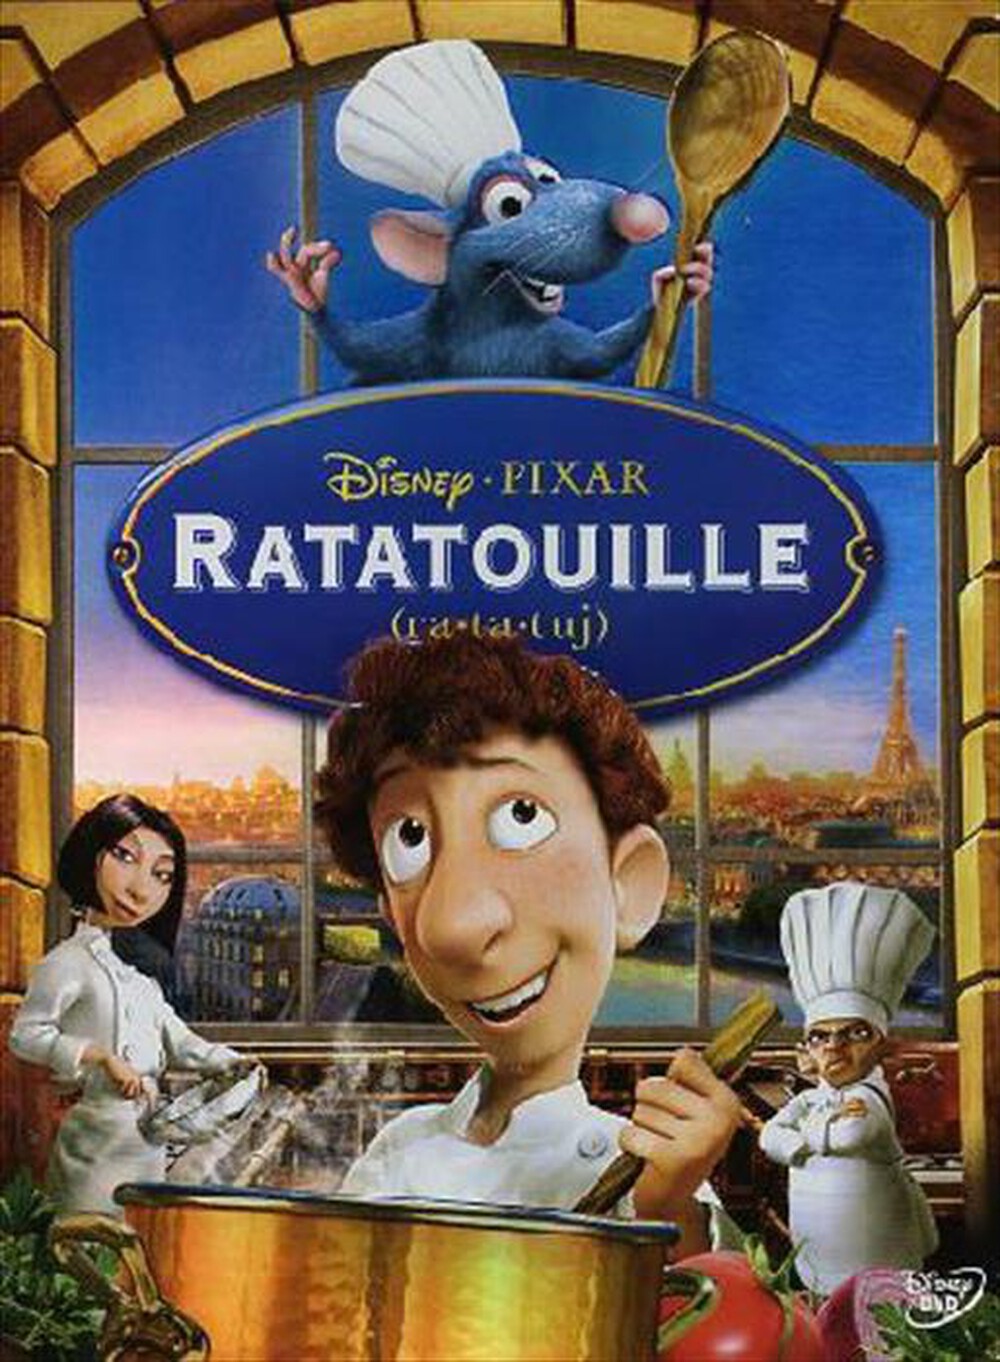 "WALT DISNEY - Ratatouille"